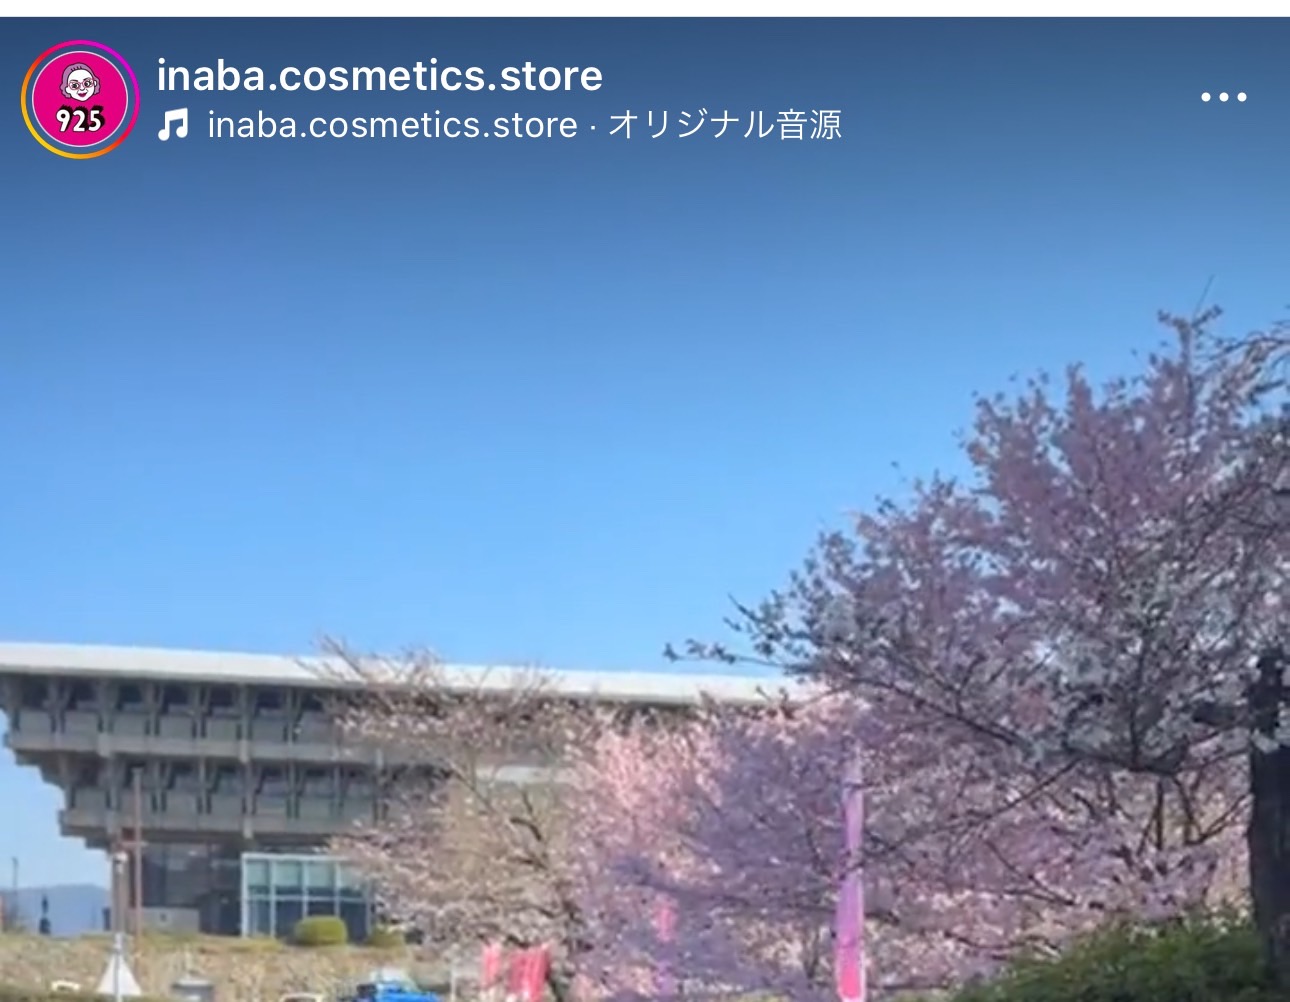 津山文化センター（同）と見ごろを迎えた桜の様子を紹介した、イナバ化粧品店のインスタライブの様子